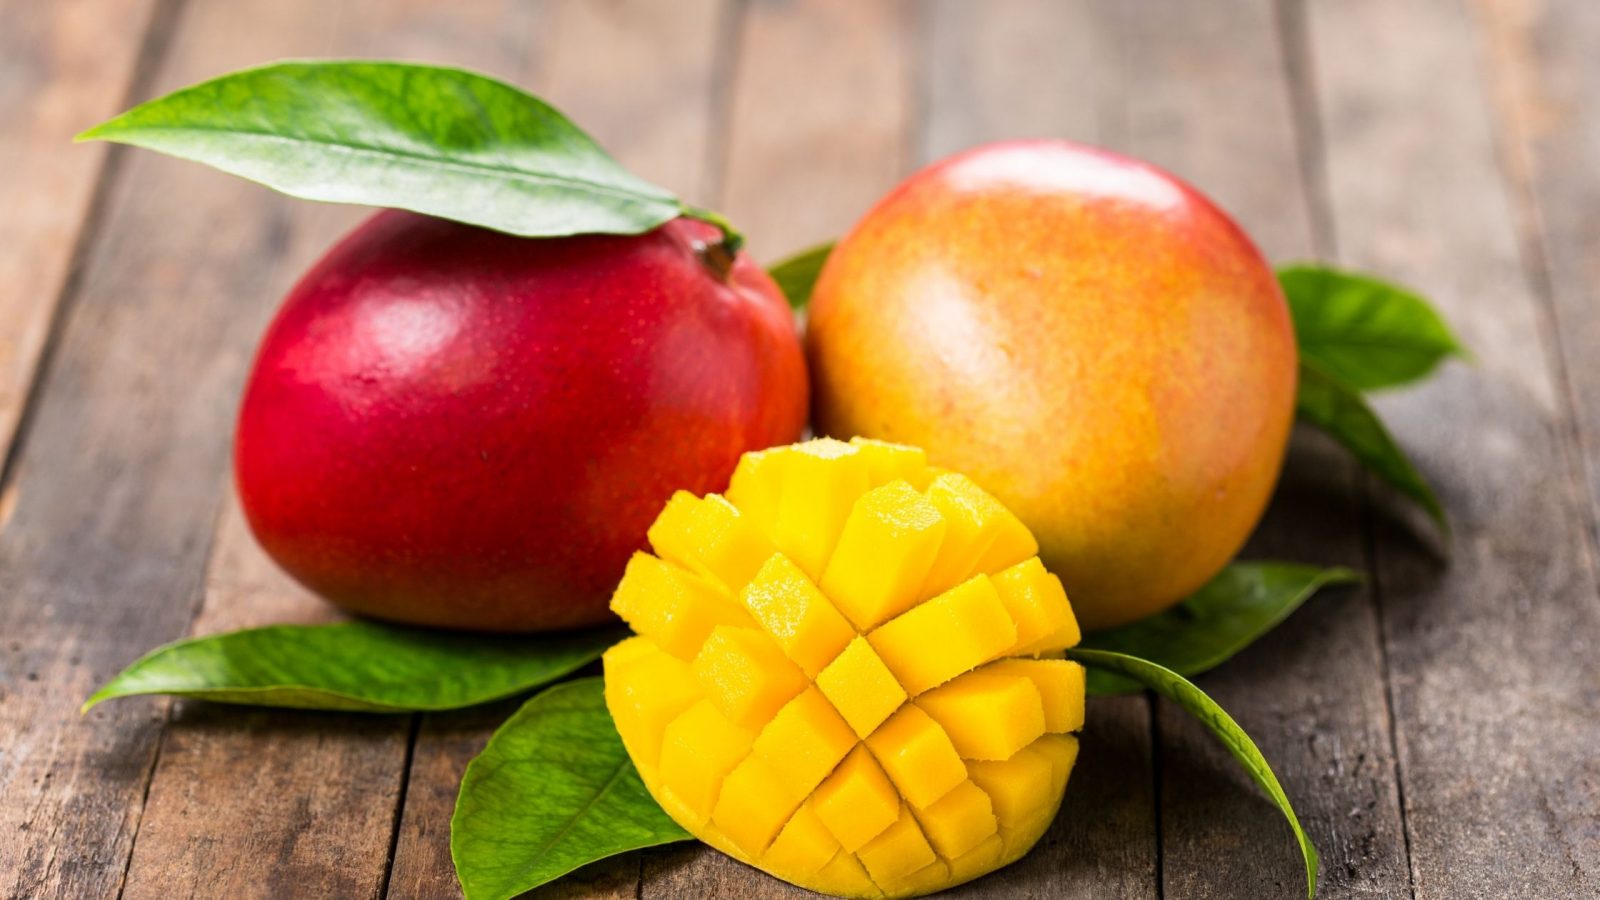 mangonun faydaları